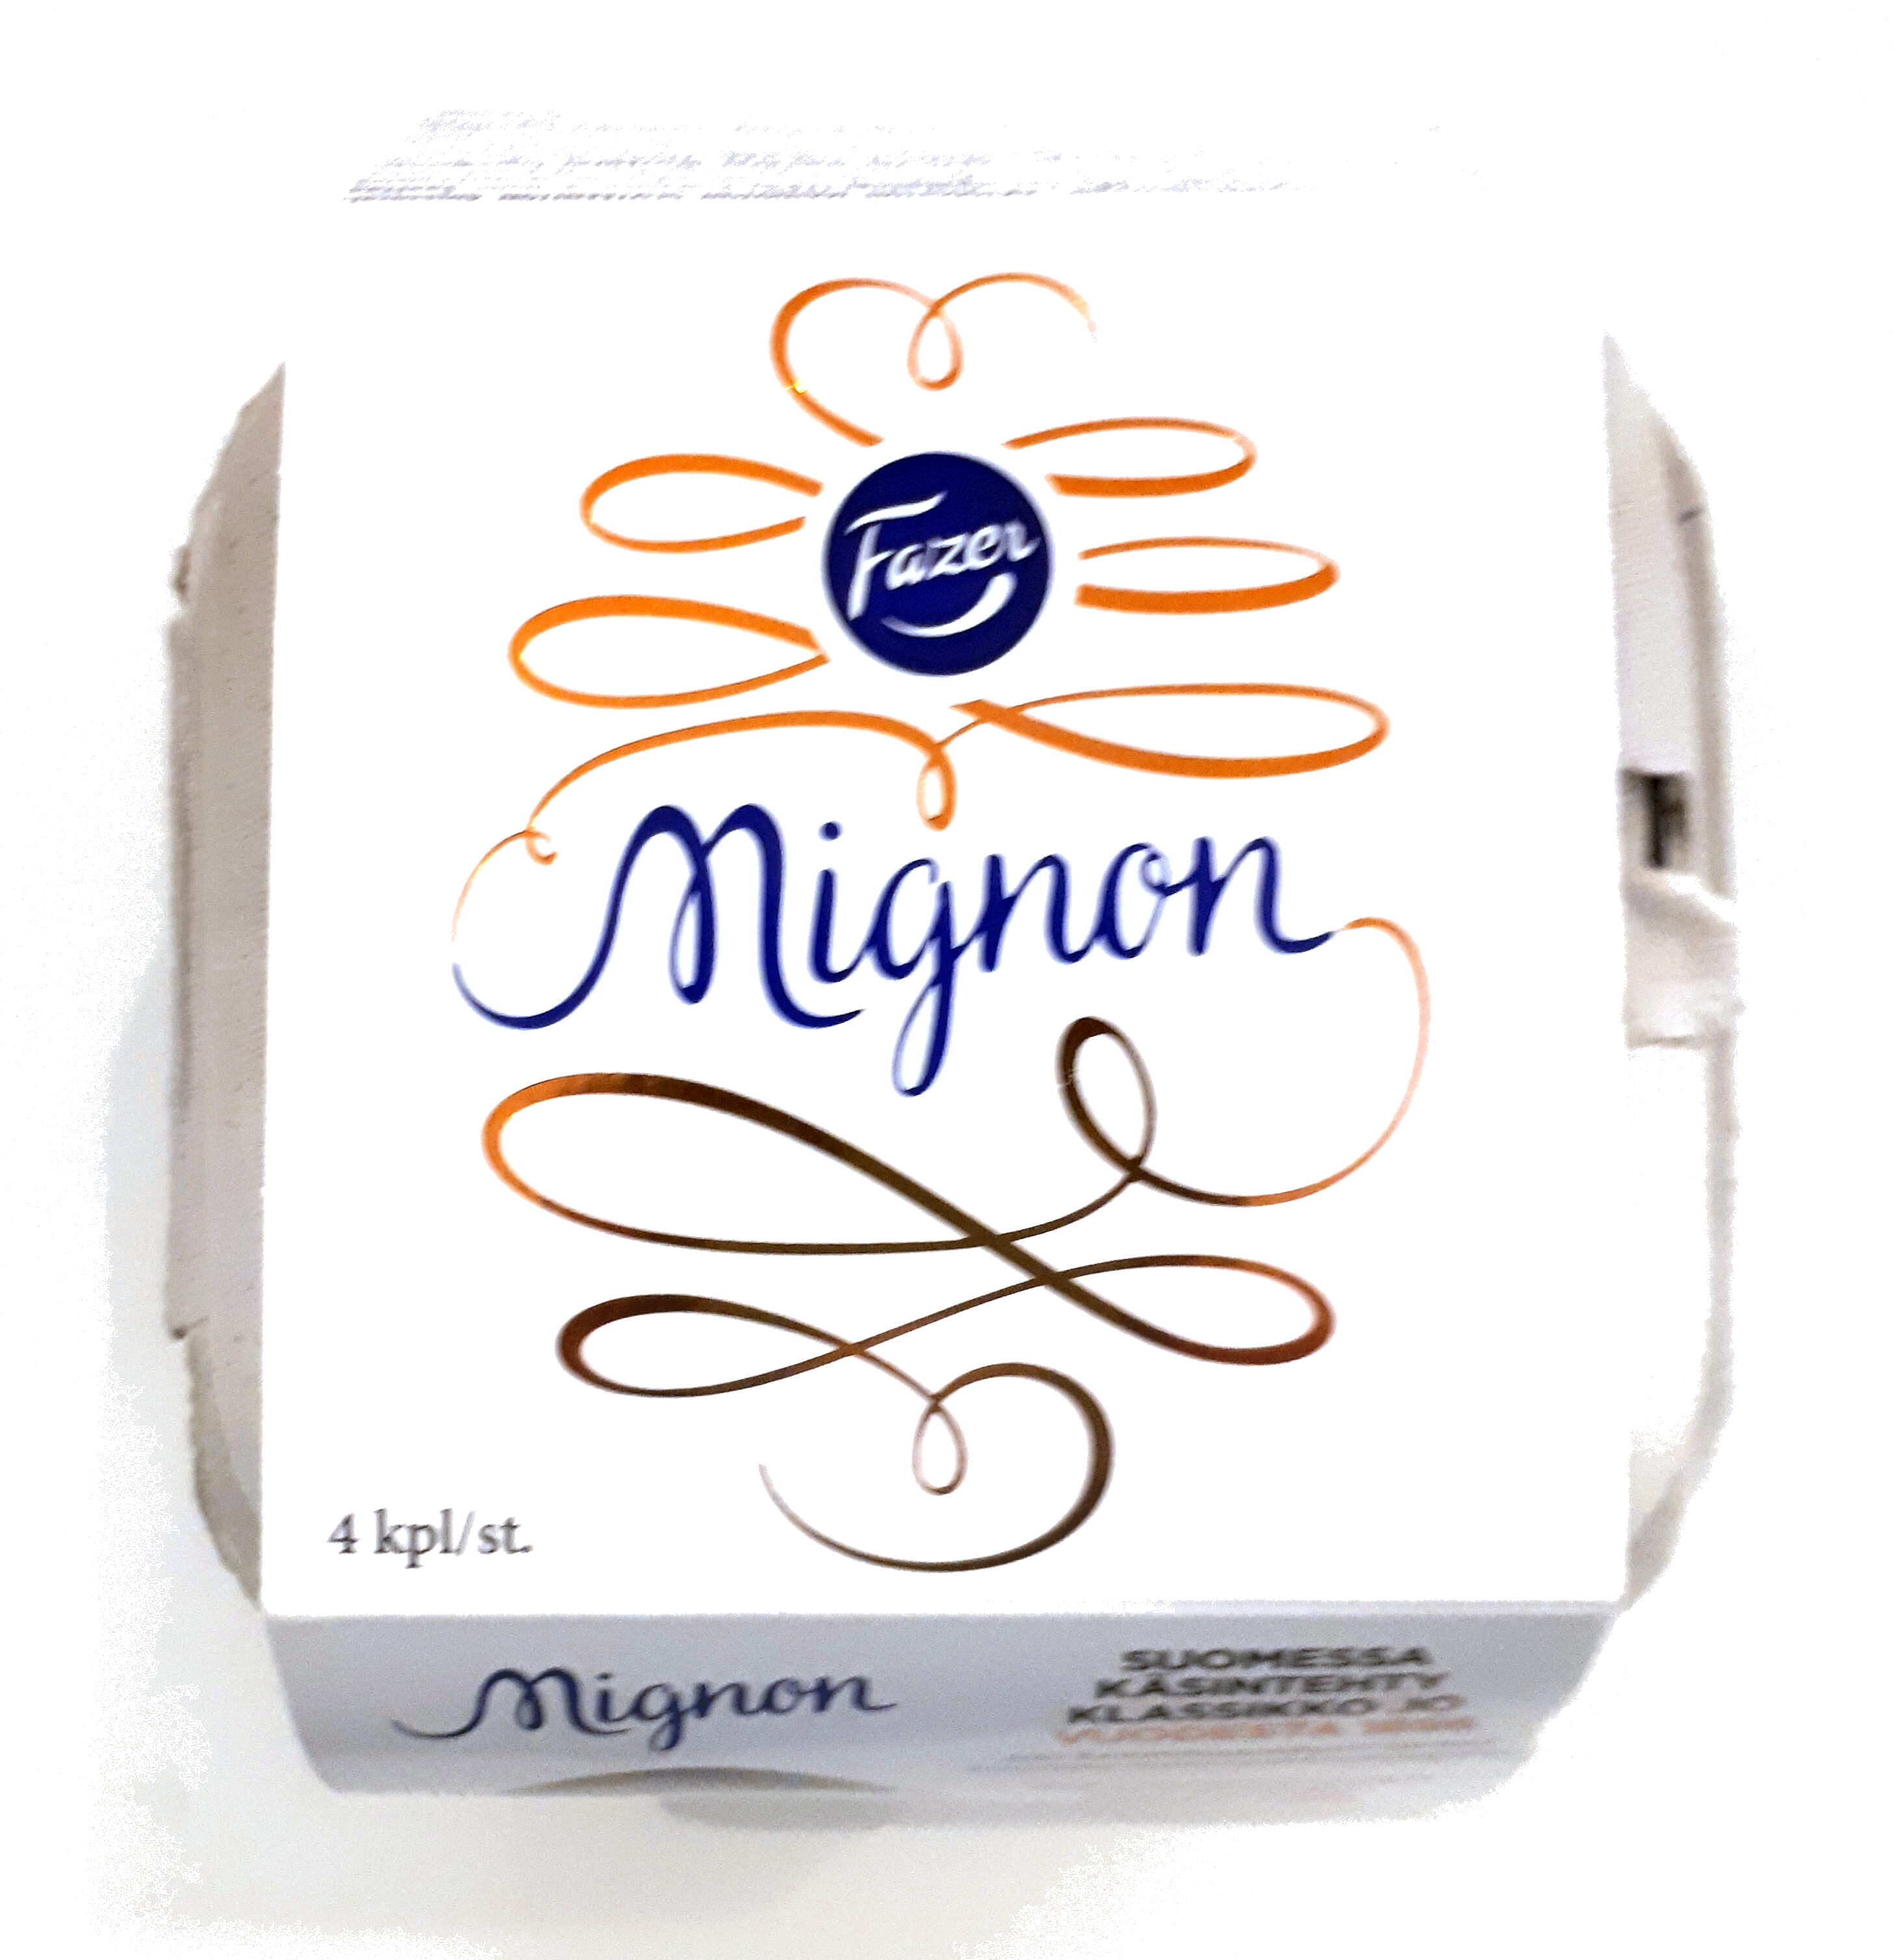 Mignon - Tuote